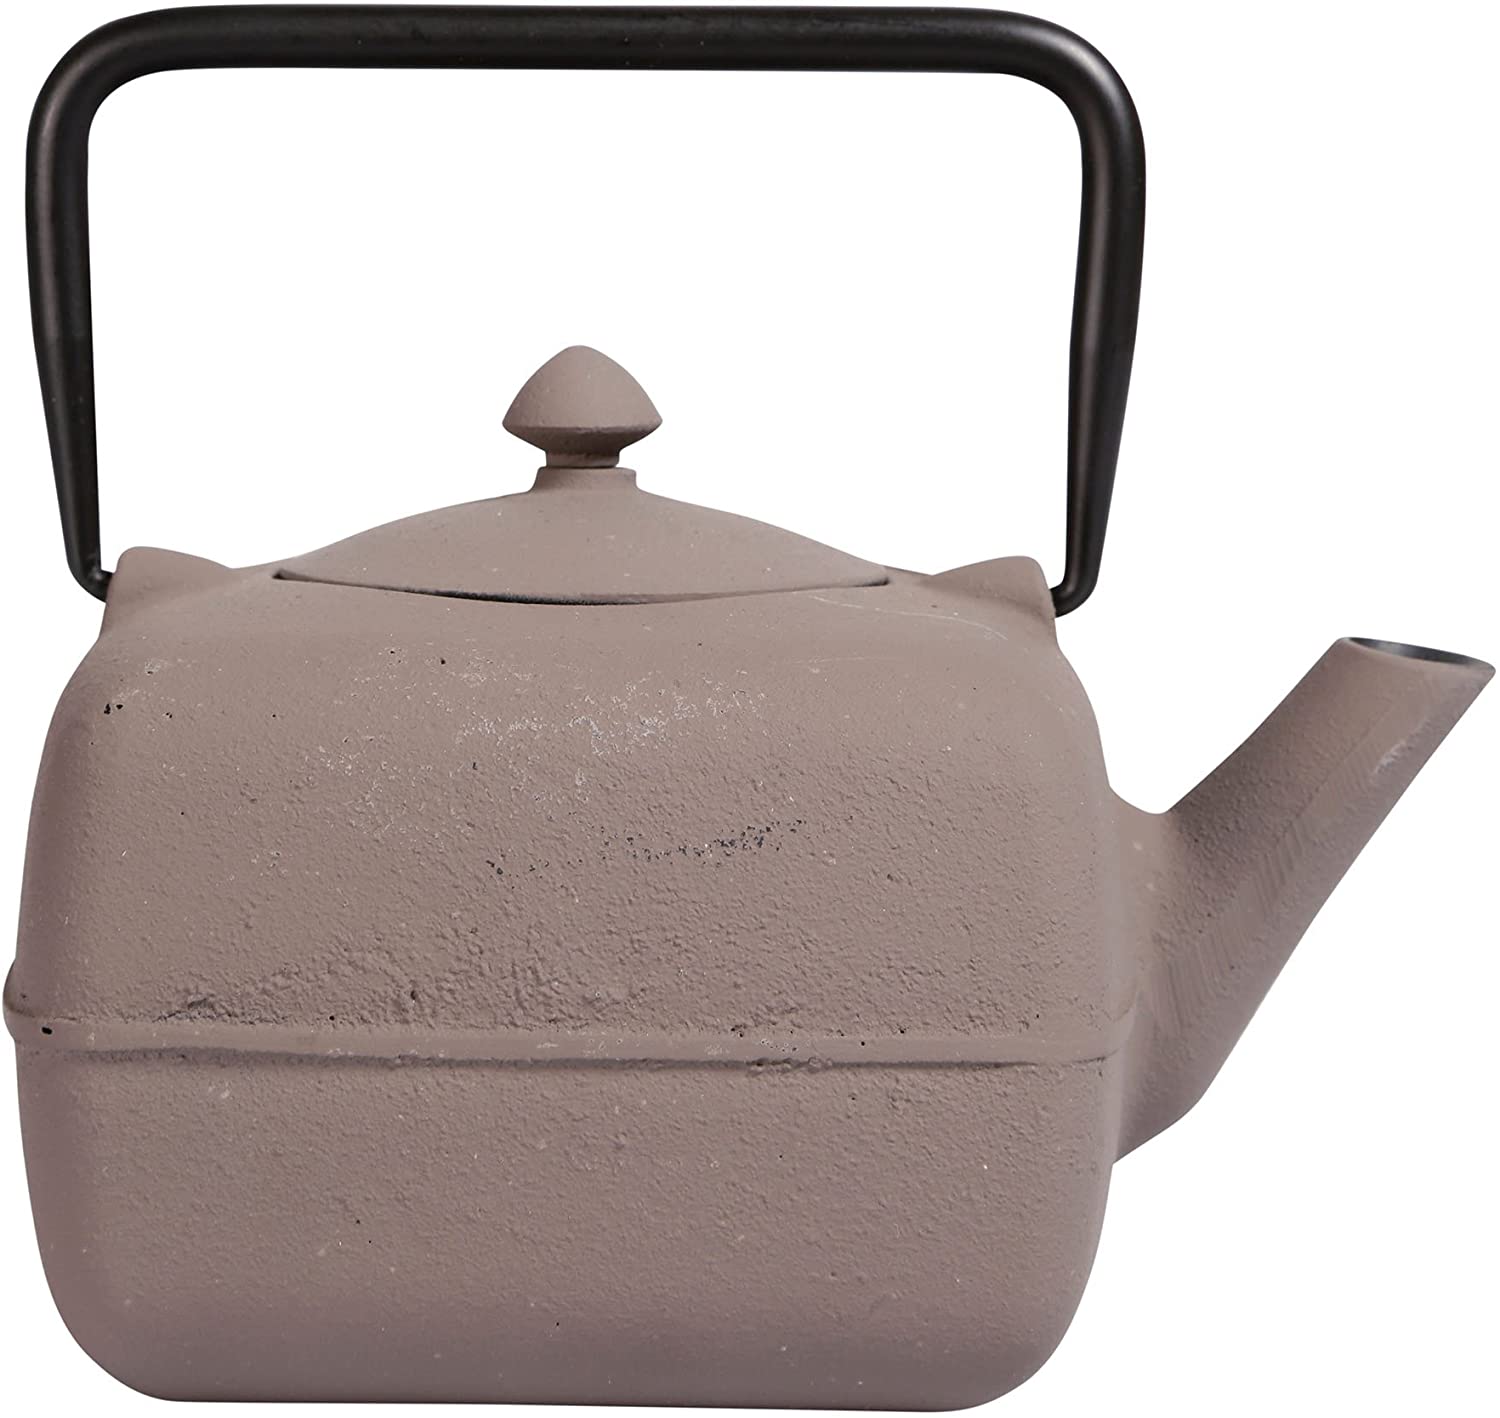 Ceainic cu filtru din fonta | Sema Design